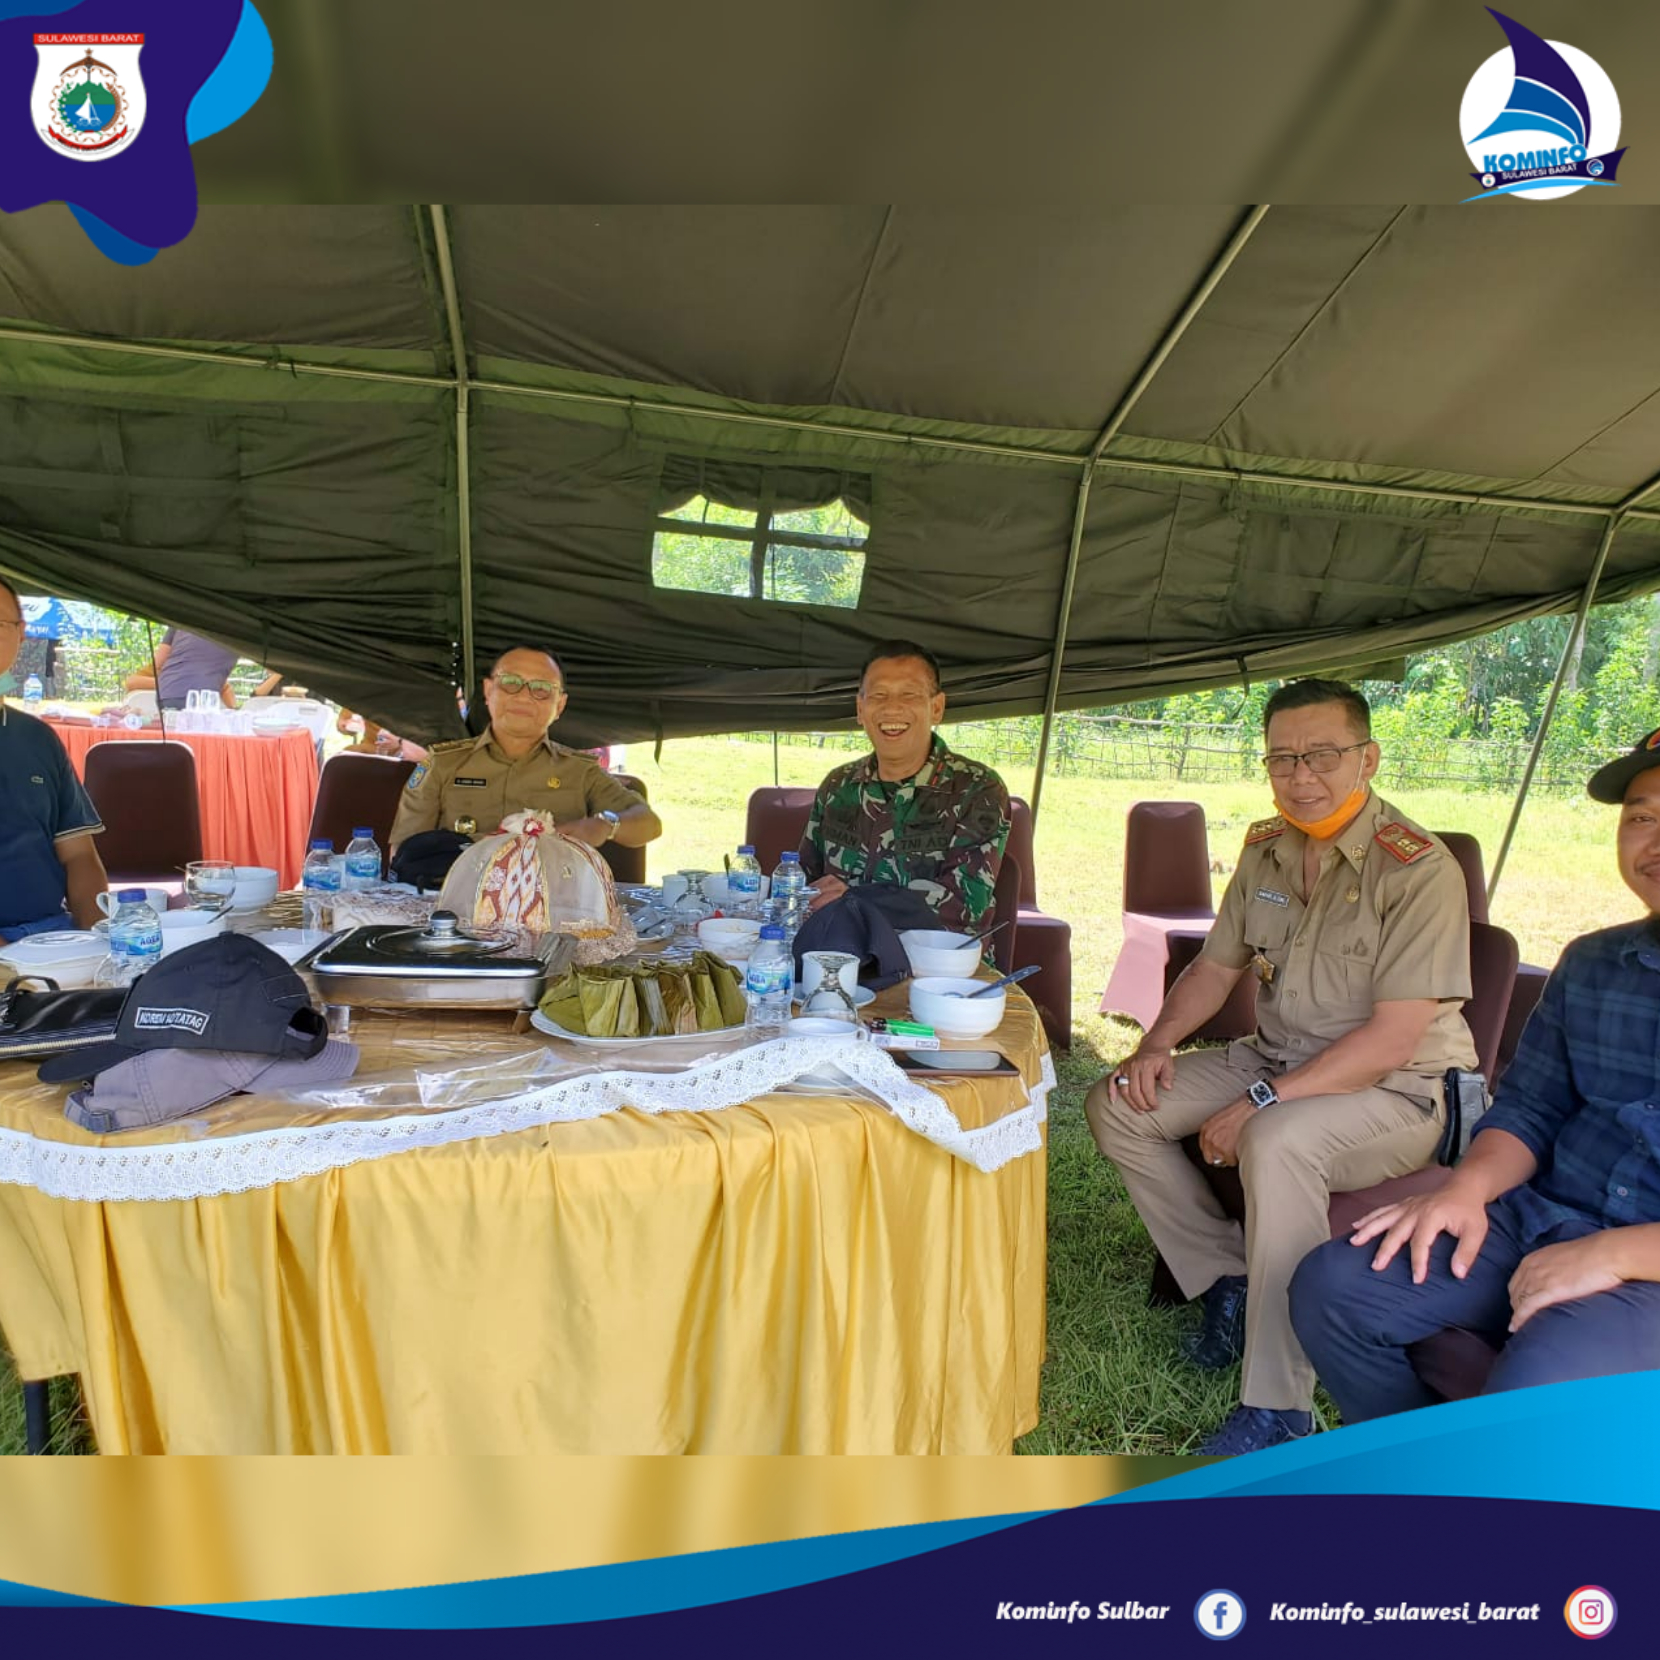 Kepala Dinas Kominfopers Sulbar, Safaruddin pada acara Silaturahmi, Kearifan Lokal, dan Profesional yang dilaksanakan di Makorem 142 Tatag